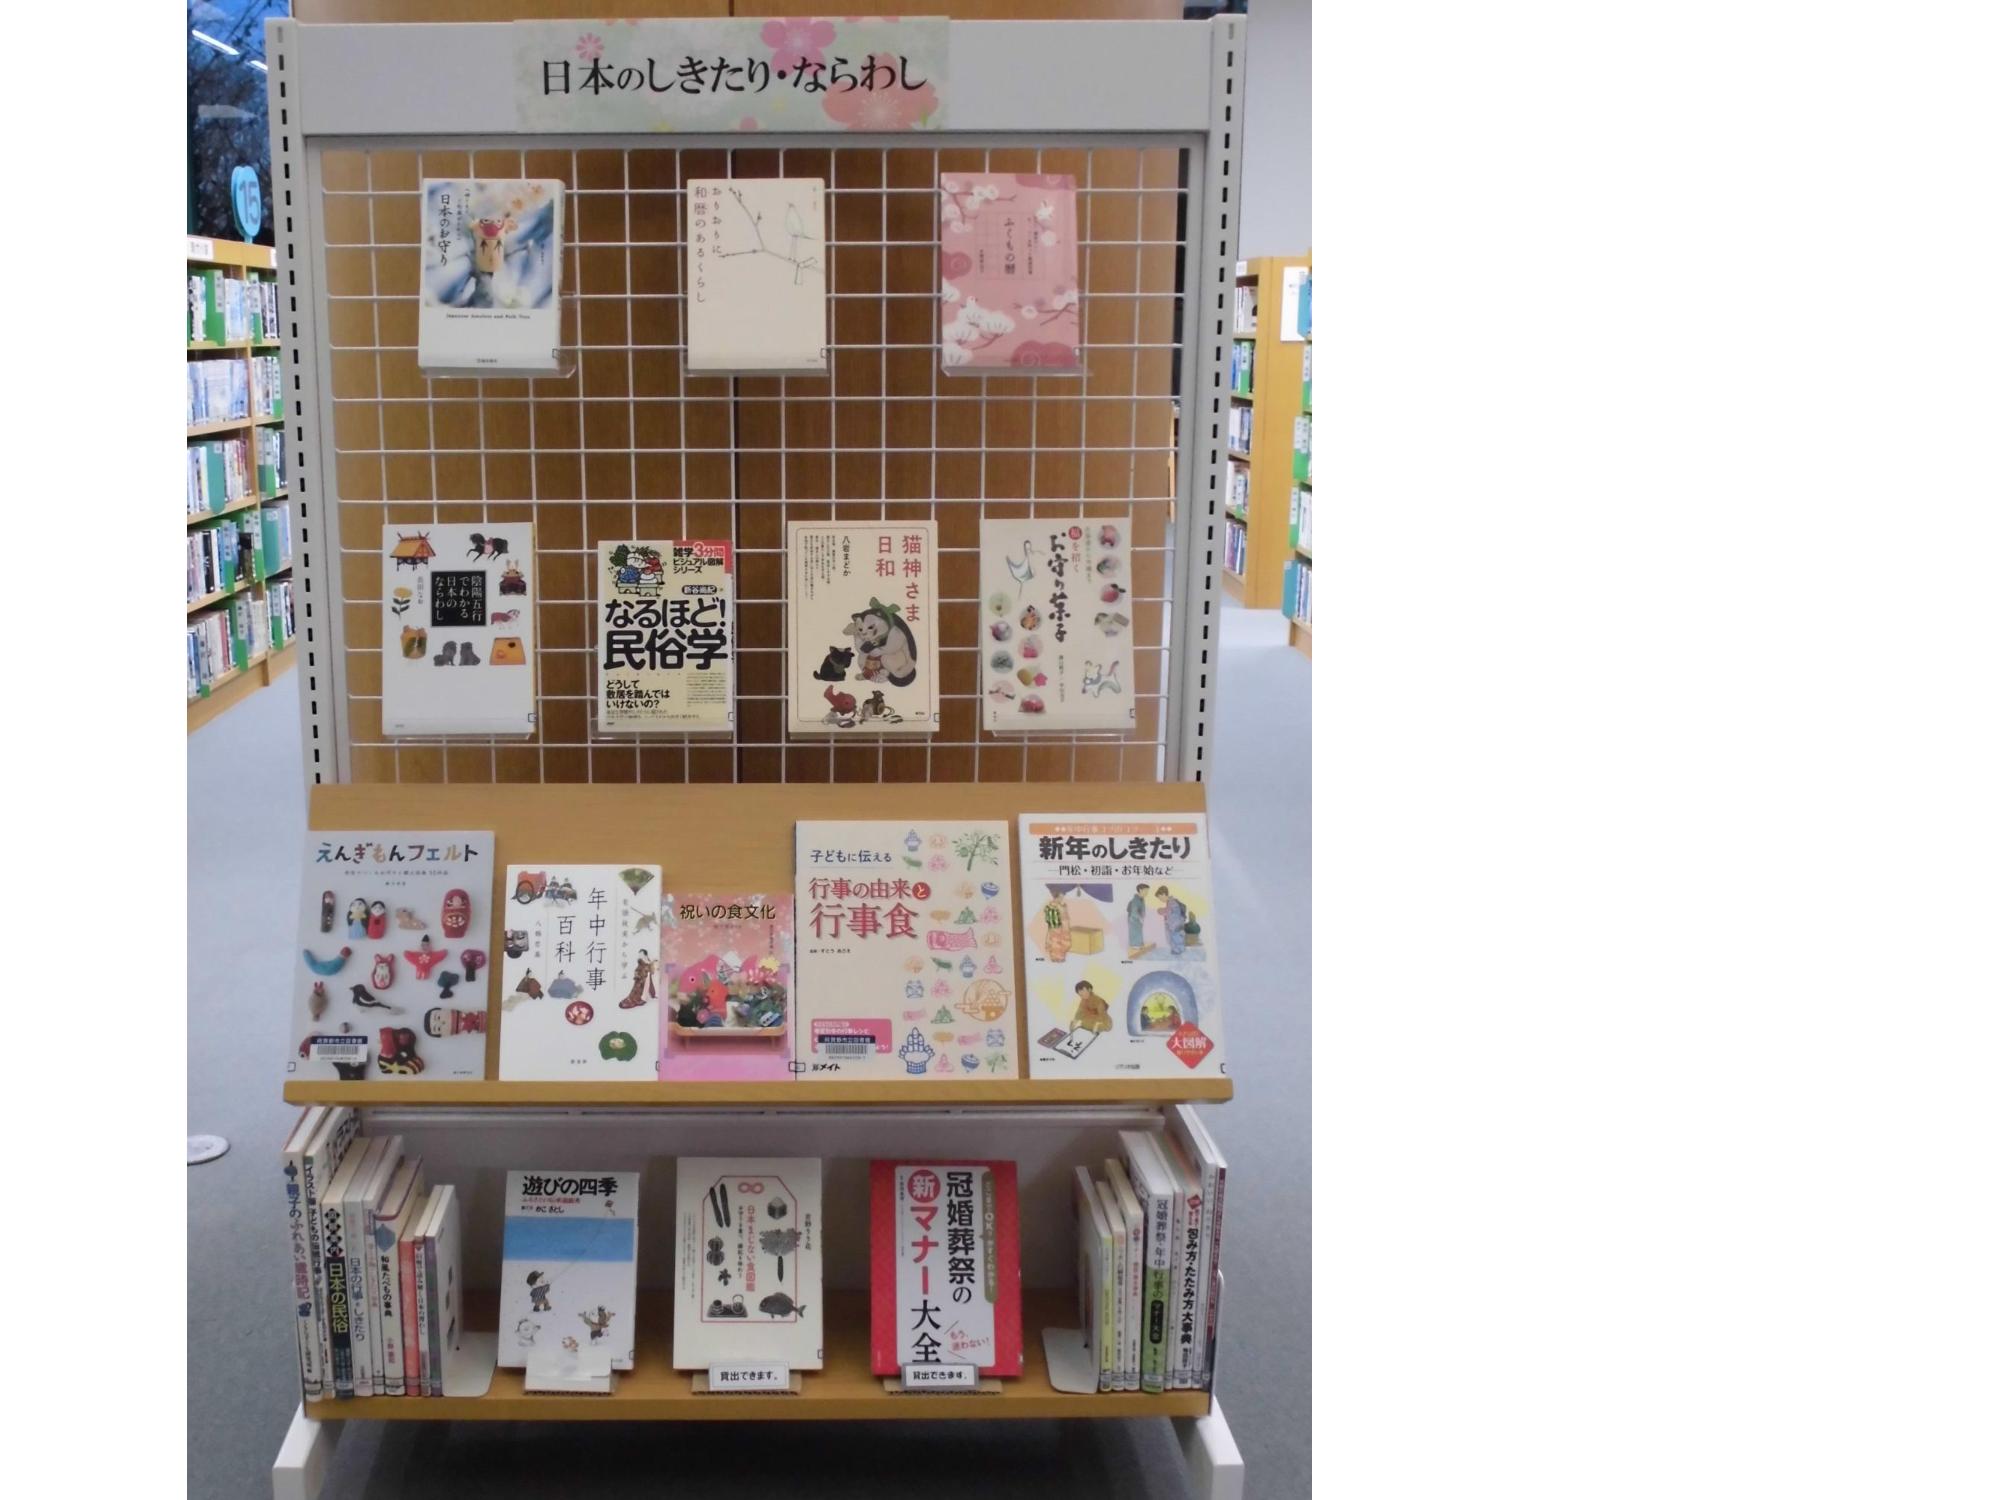 日本のしきたり・ならわしに関する本の展示の写真